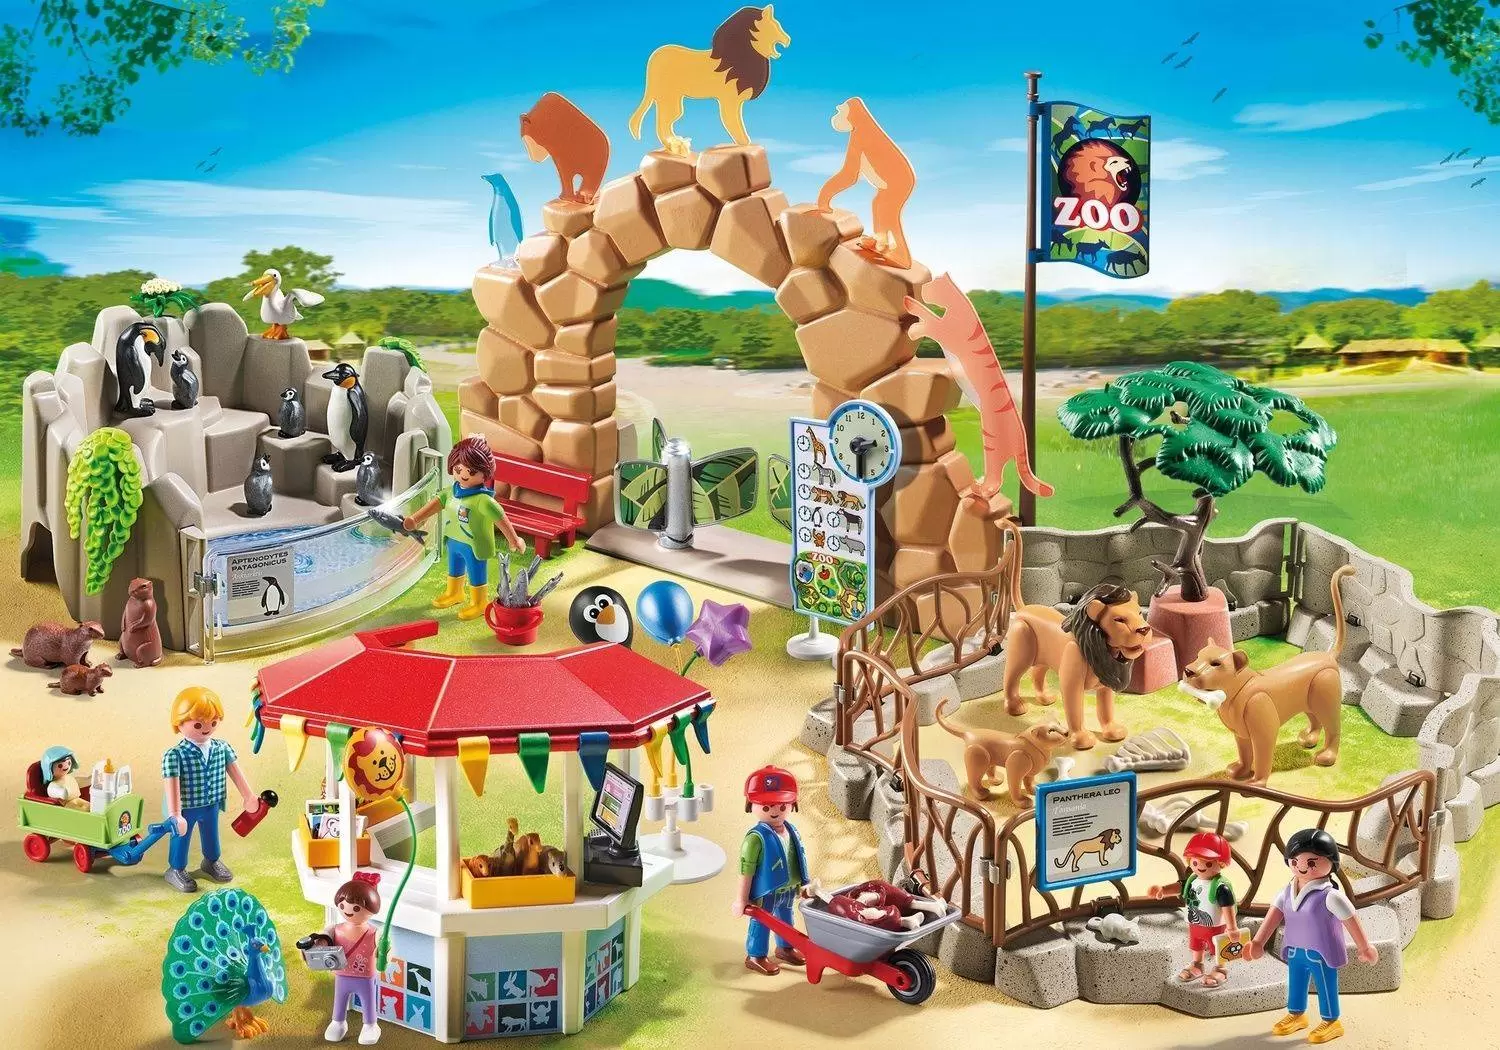 Playmobil - Parc animalier avec visiteurs